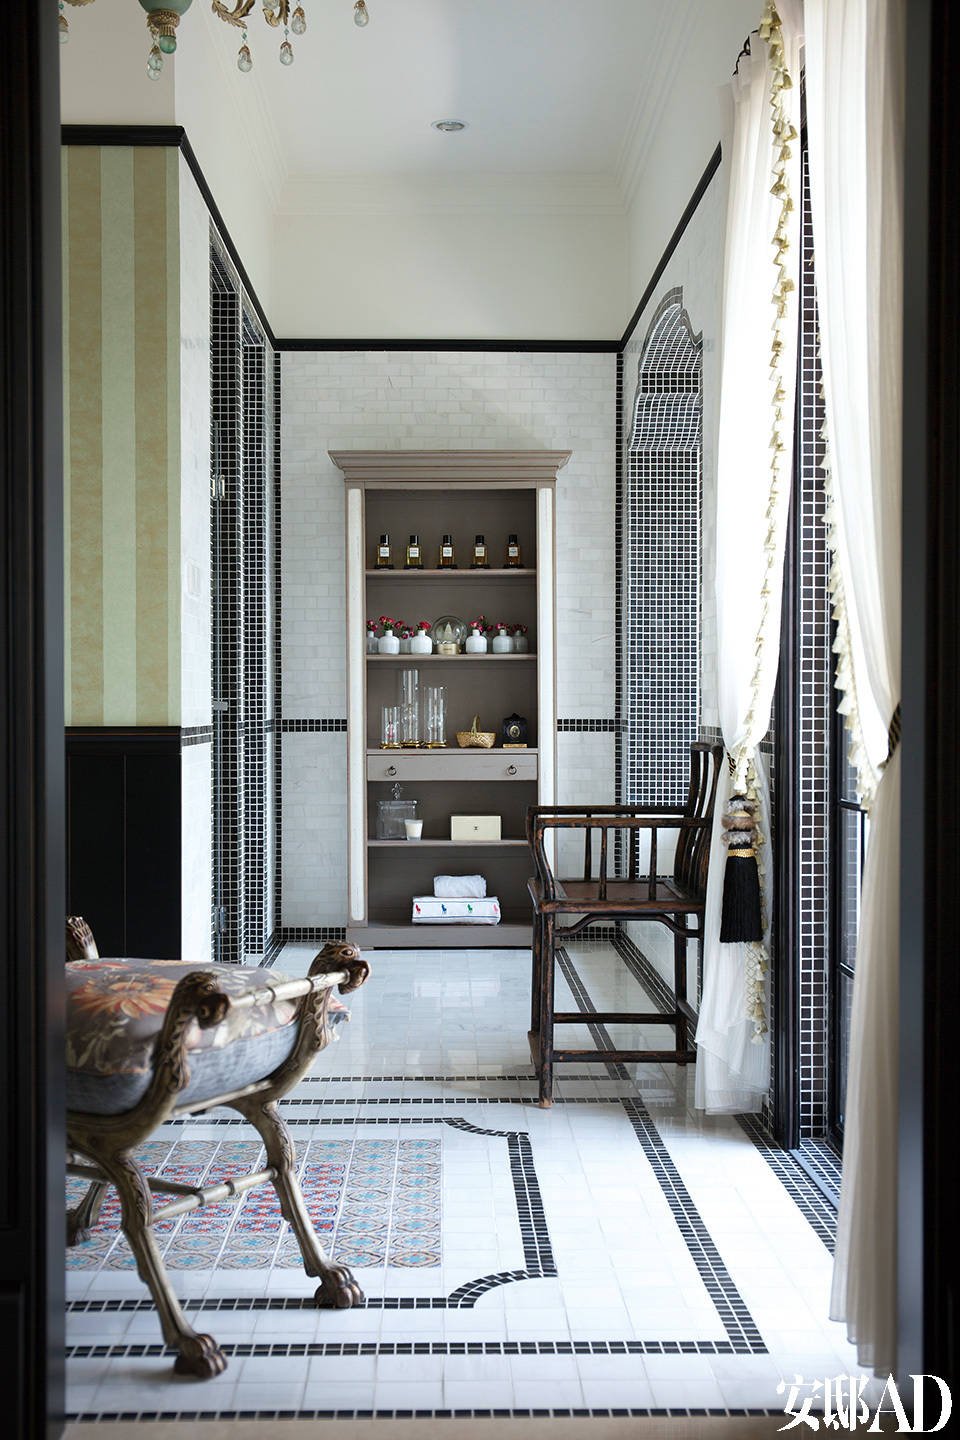 主人浴室是设计师和主人都十分满意的地方，黑白马赛克与复古地砖完美结合。